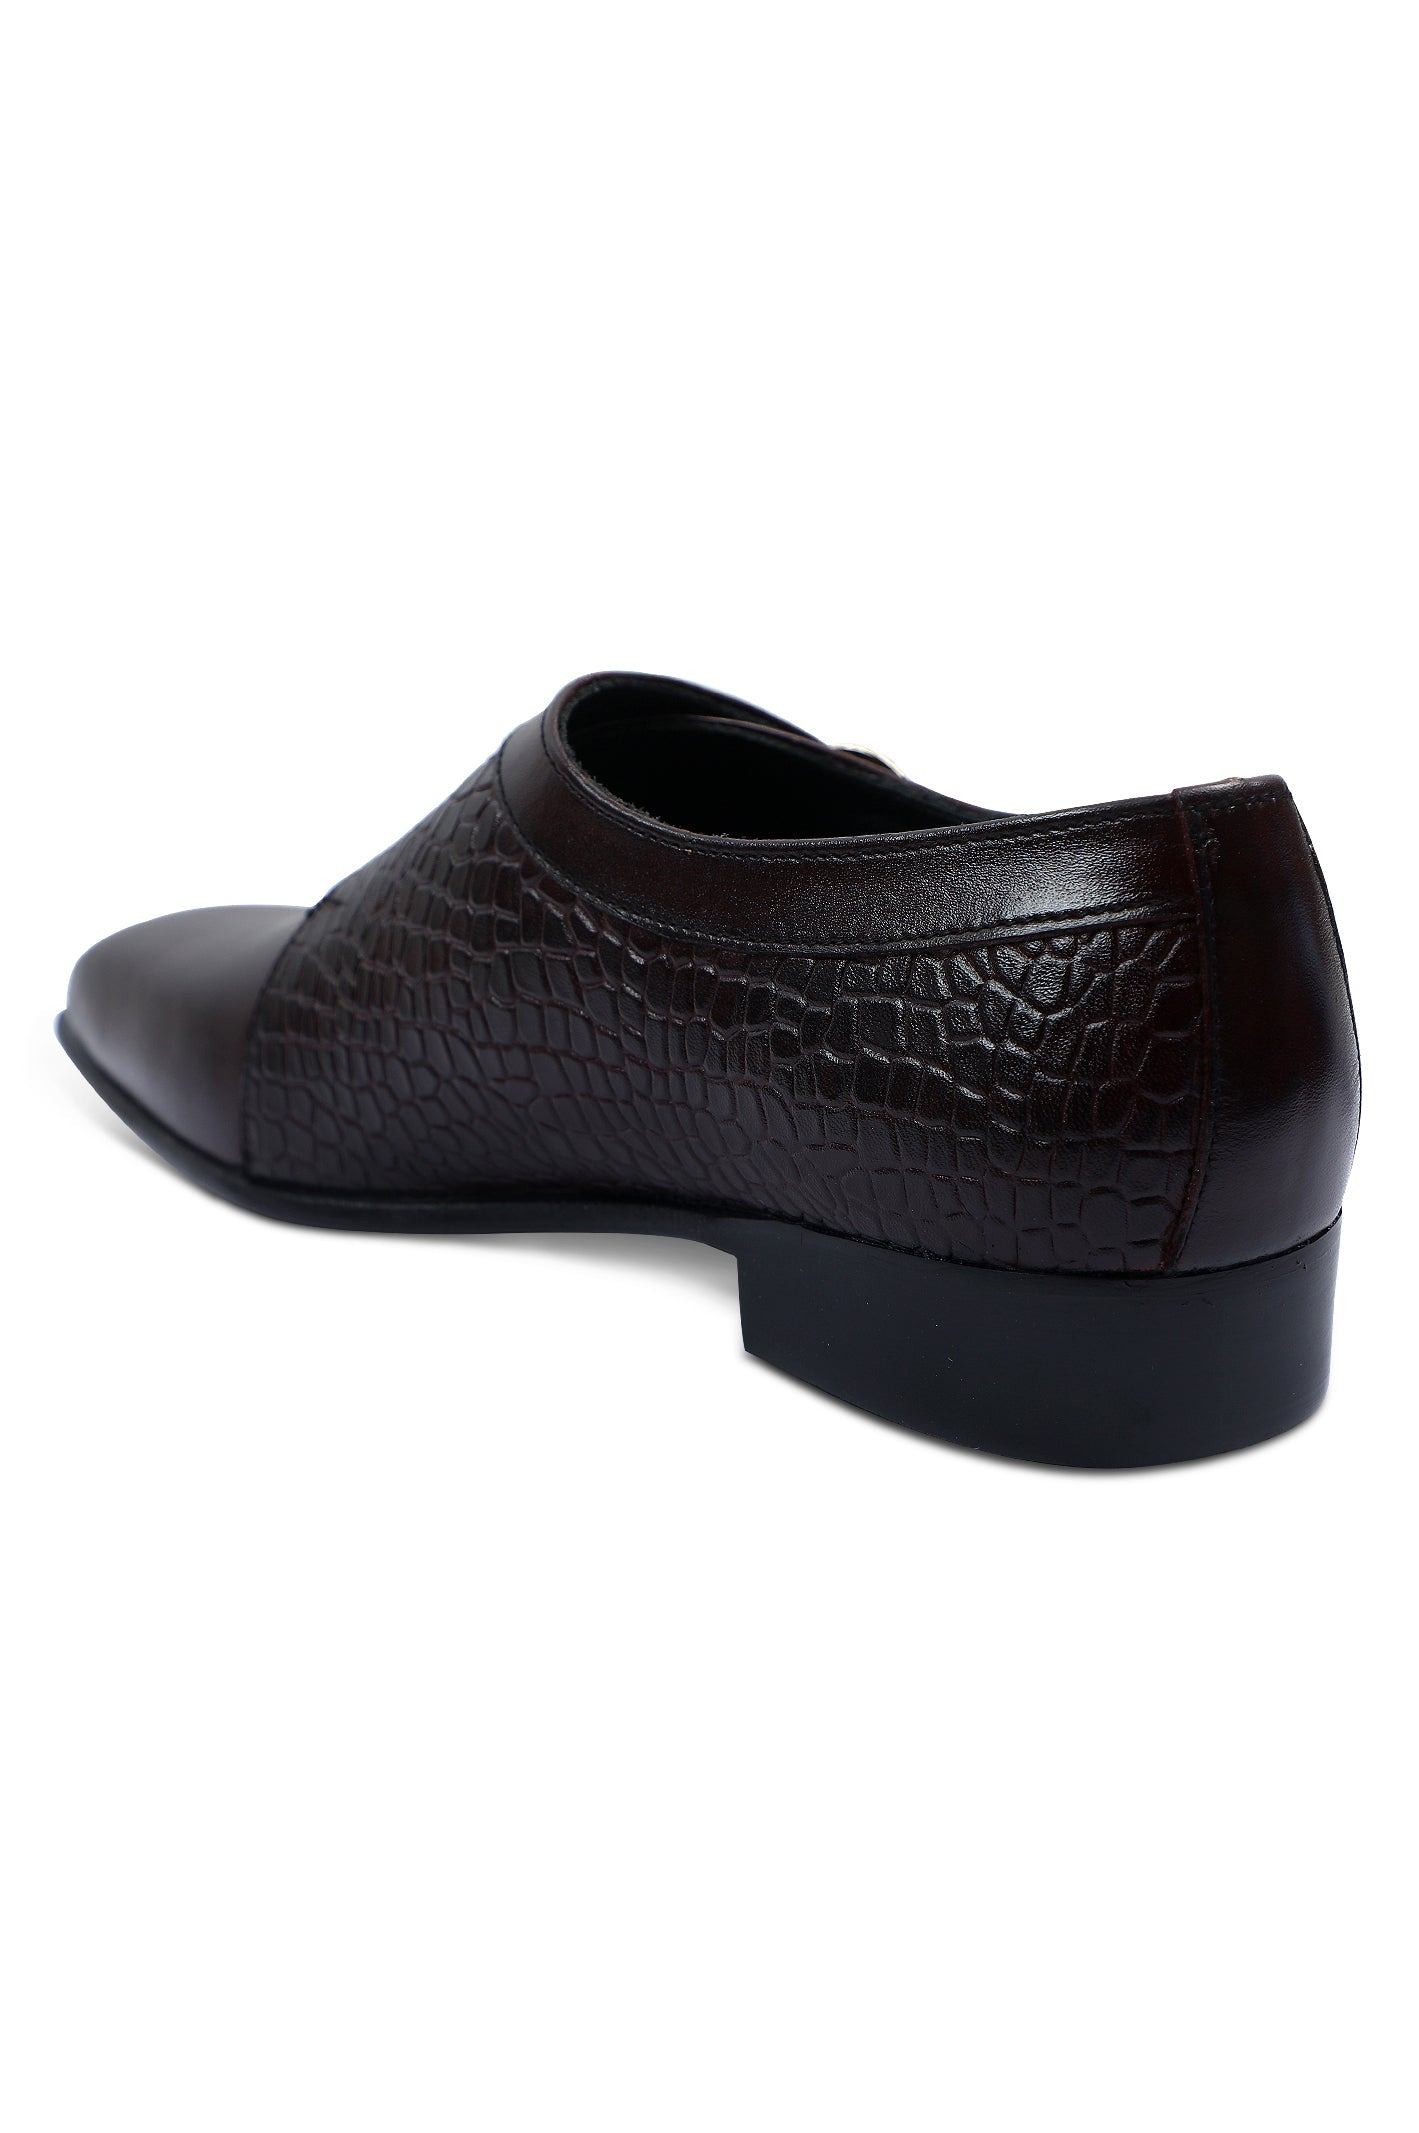 Formal Shoes For Men SKU: SMF-0214-TAN - Diners